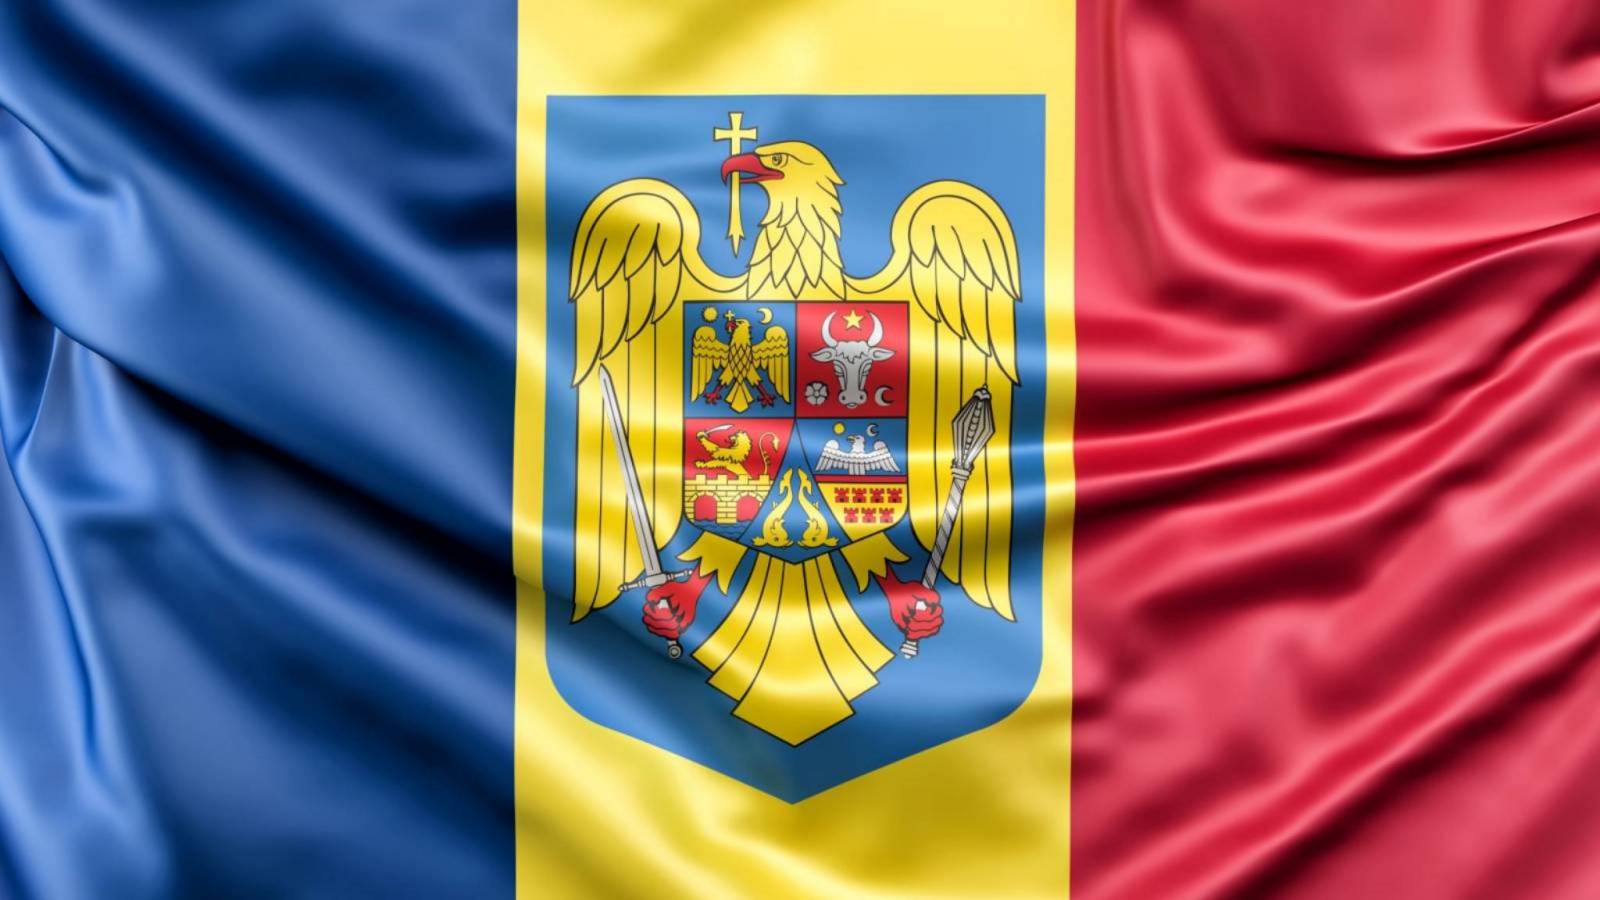 Romania Masurile RADICALE ULTIMA ORA Anuntate BLOCAREA Aderarii Schengen